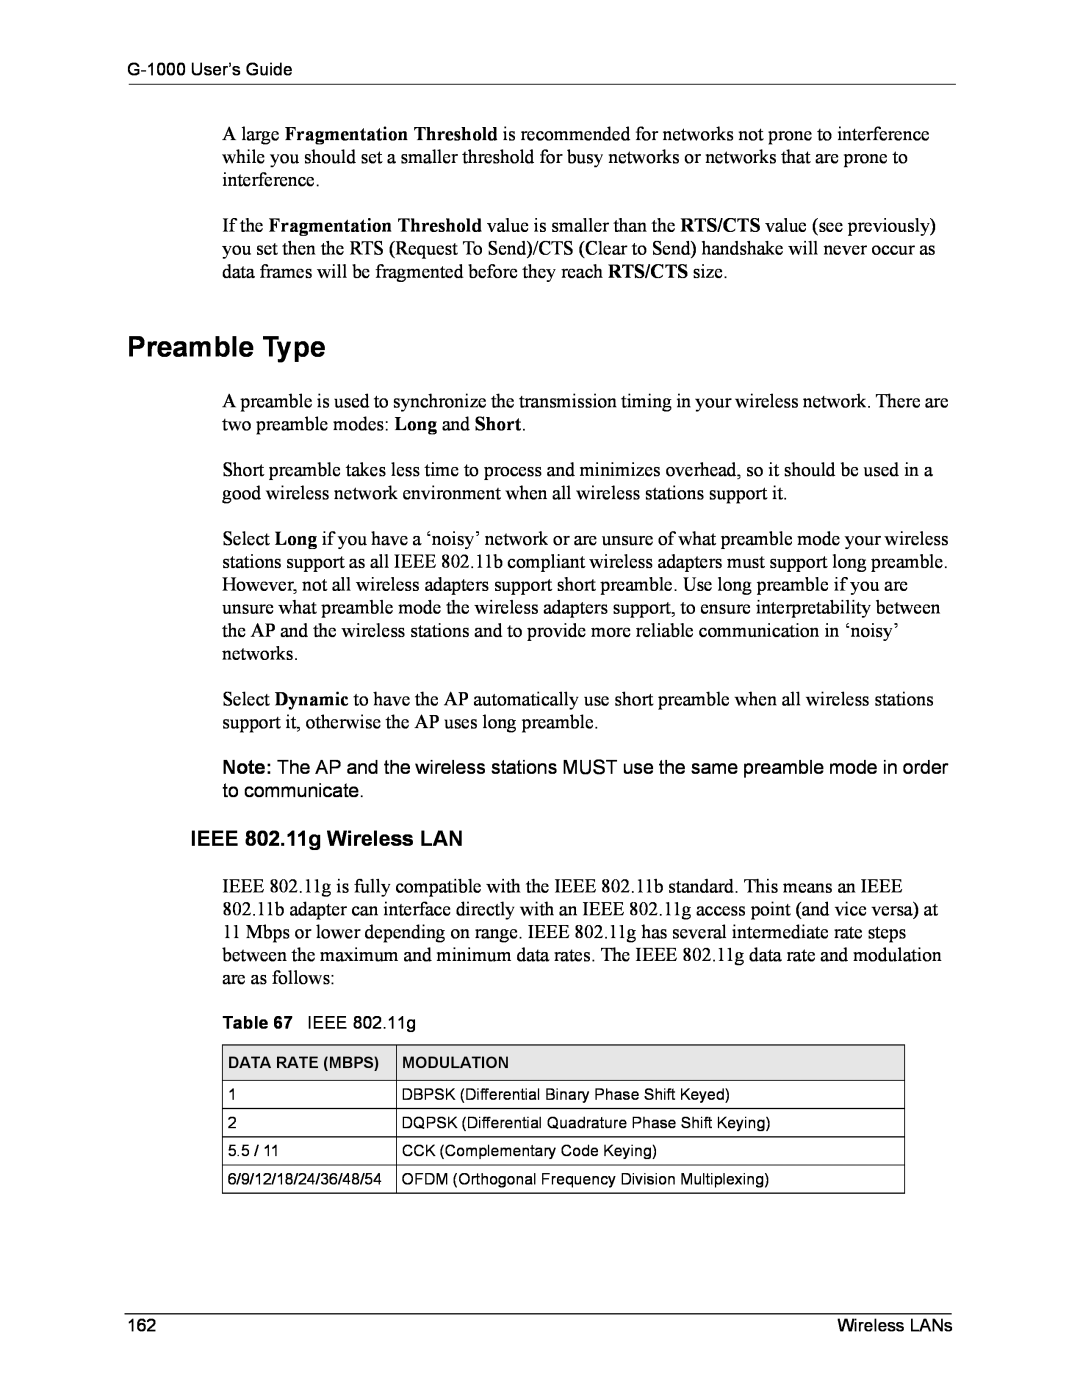 ZyXEL Communications G-1000 manual Preamble Type, IEEE 802.11g Wireless LAN 